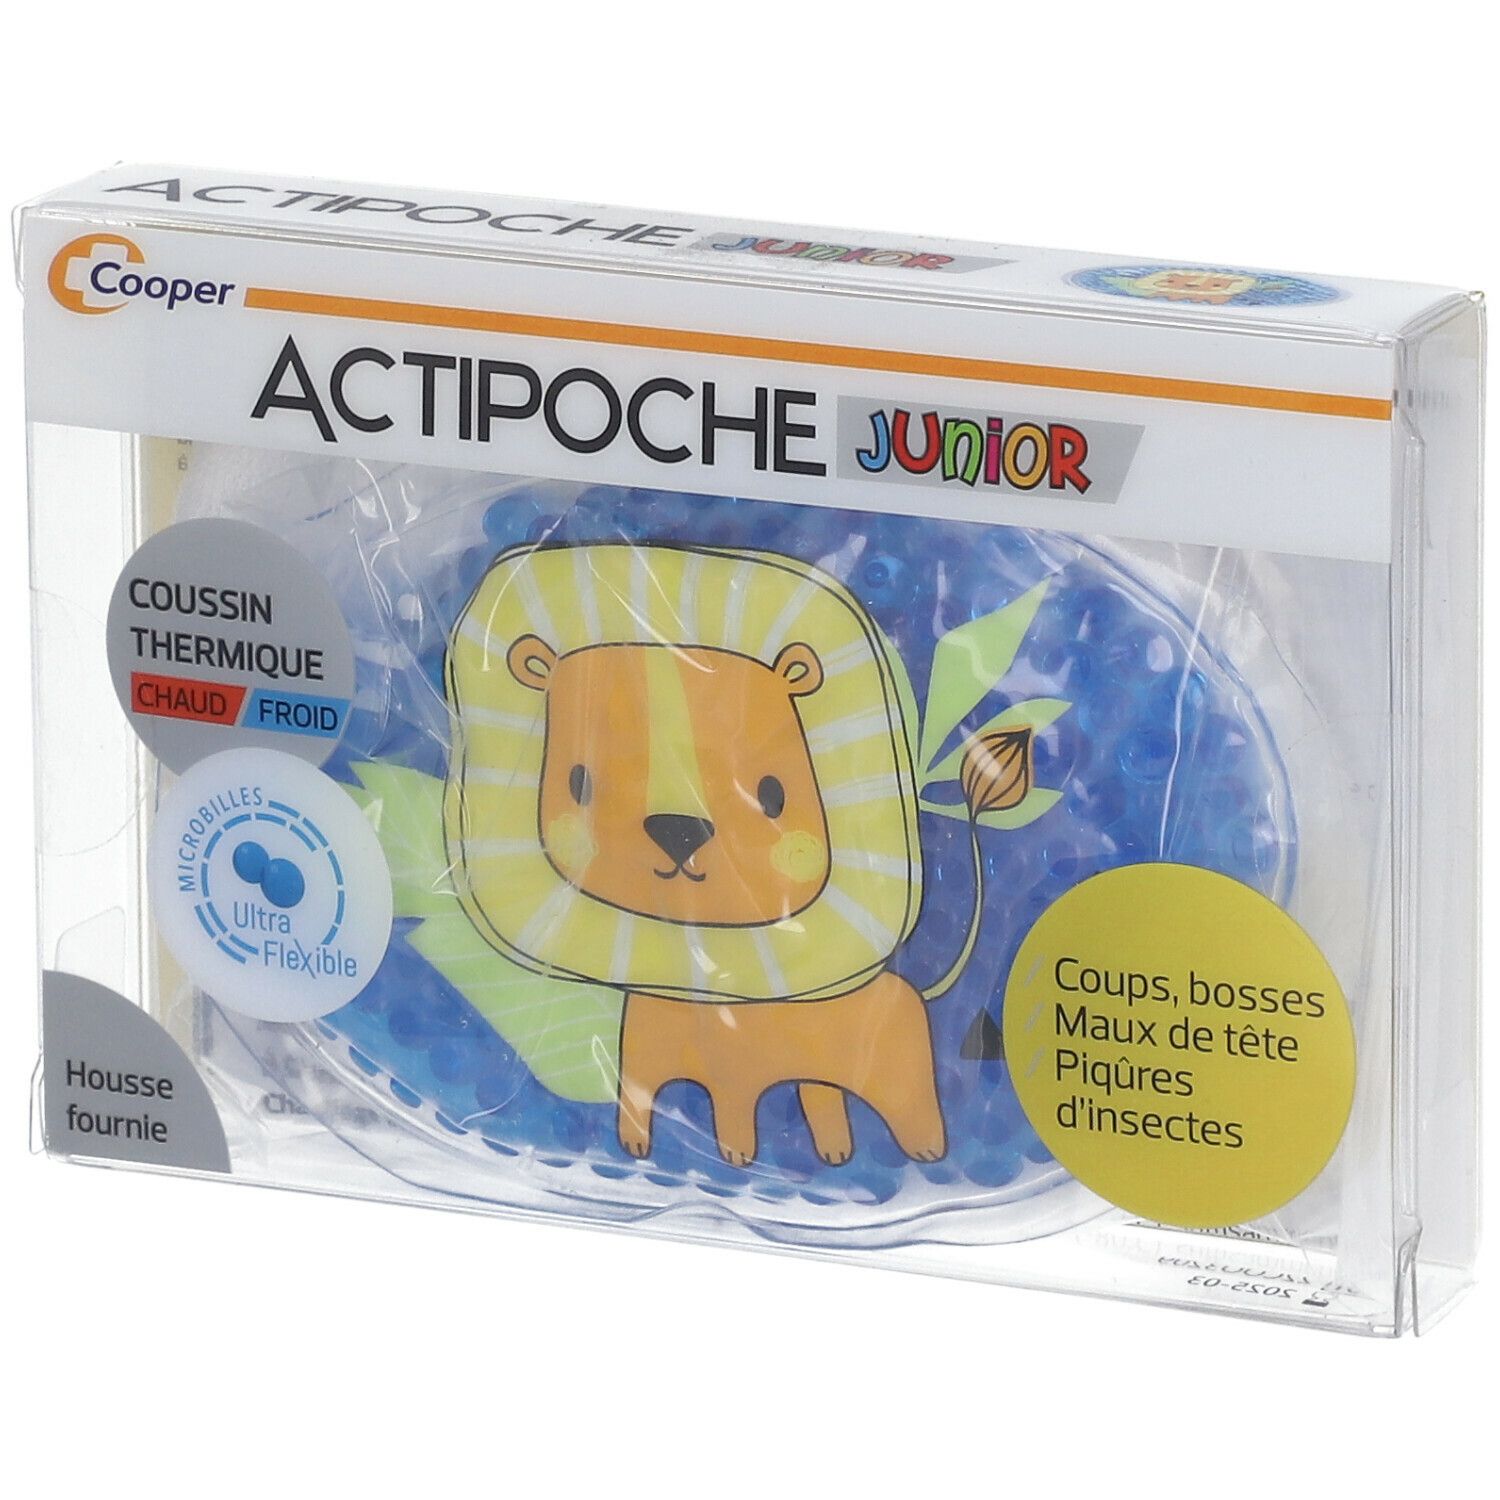 Actipoche Junior Coussin Thermique Lion Microbilles